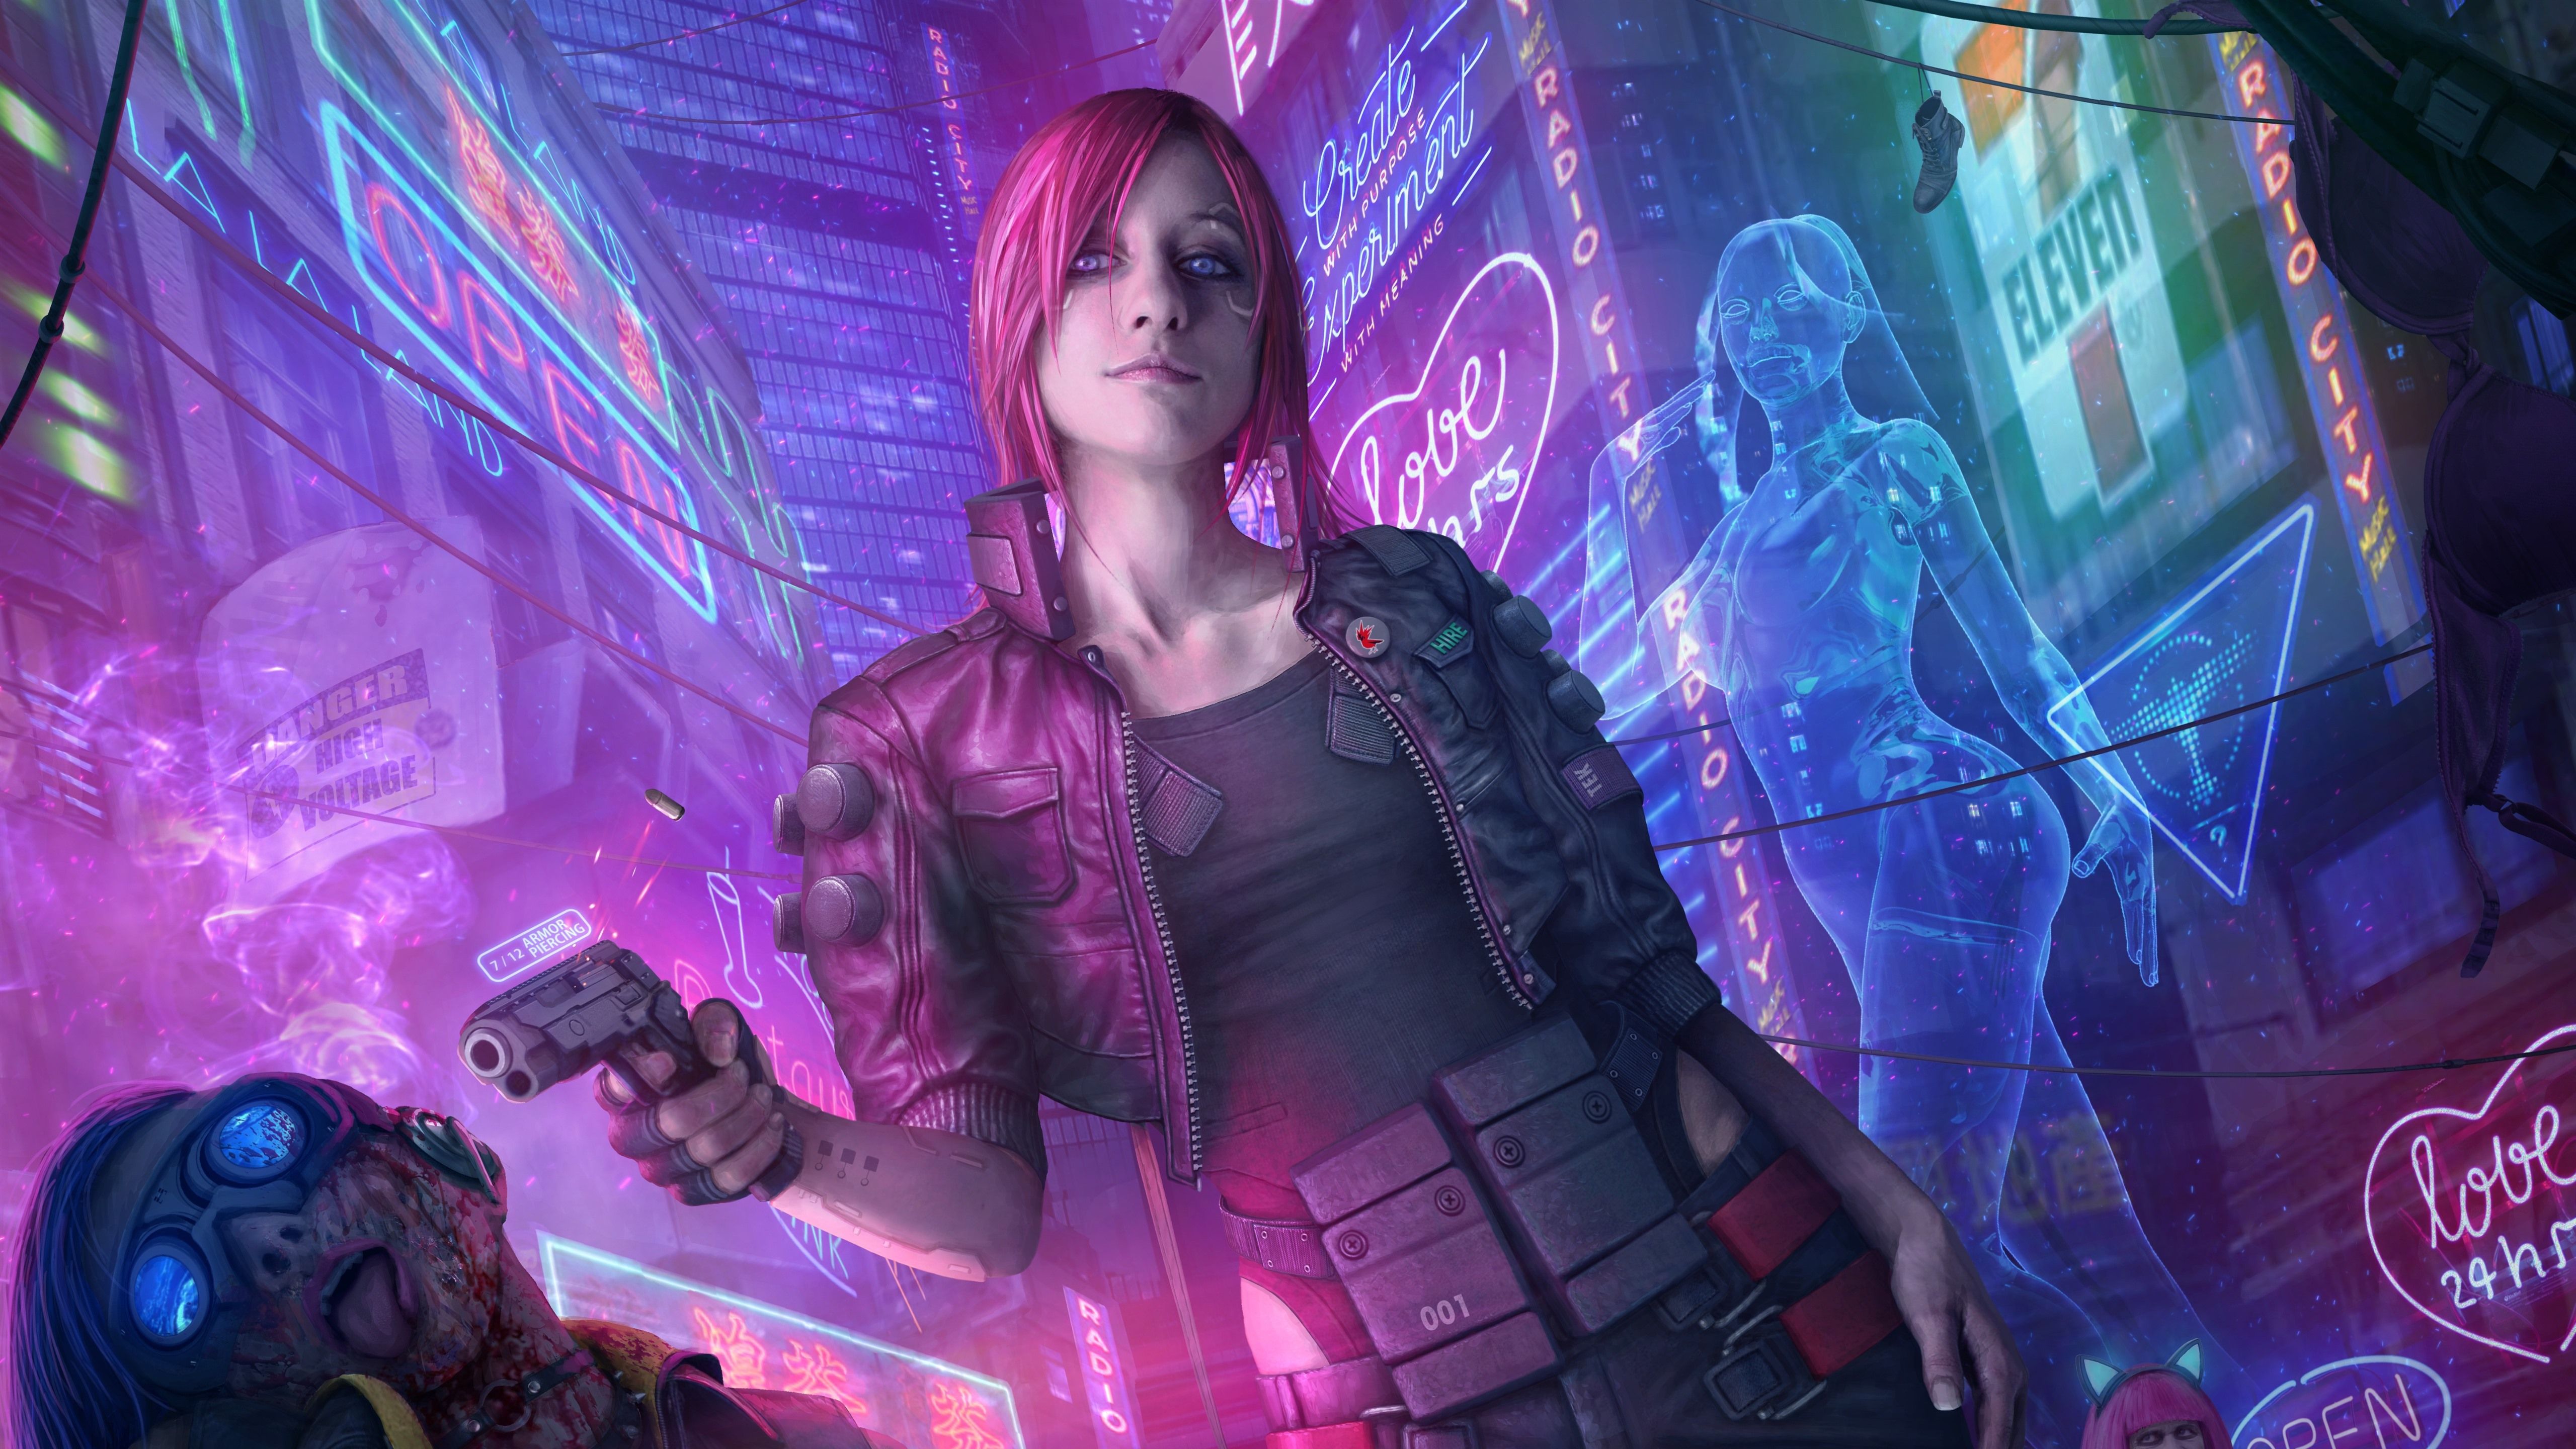 Wallpaper Cyberpunk pink hair girl, gun, city 5120x2880 UHD